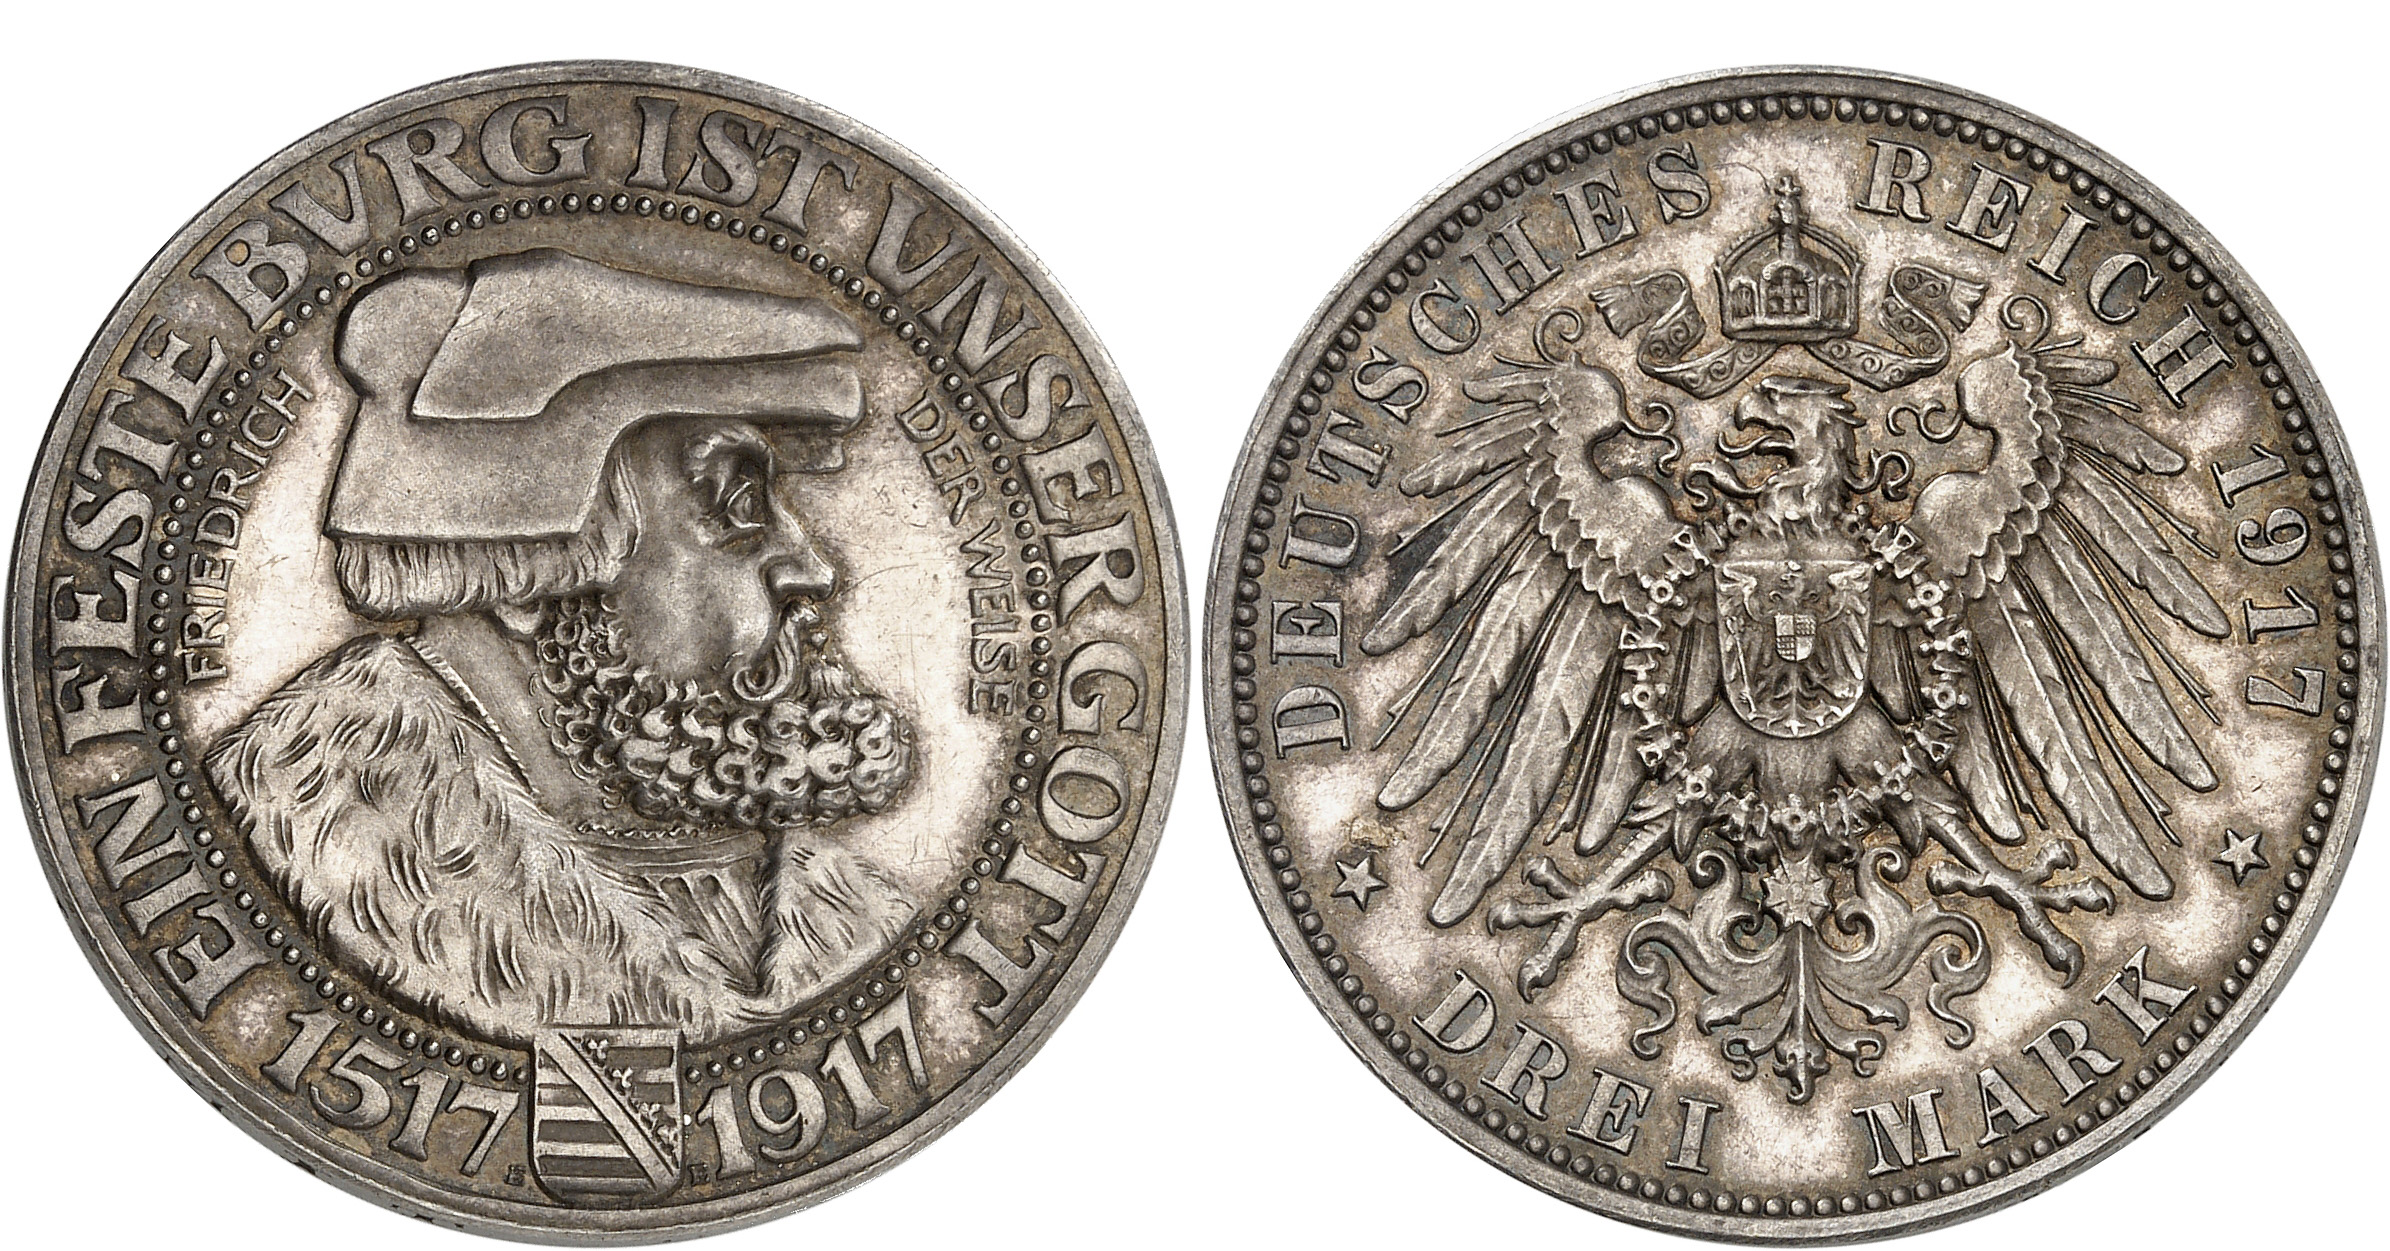 Nr. 1798: Deutsches Kaiserreich. Sachsen. 3 Mark 1917. Friedrich der Weise. Seltenste deutsche Reichssilbermünze. Polierte Platte. Taxe: 100.000,- Euro. Zuschlag: 110.000,- Euro.